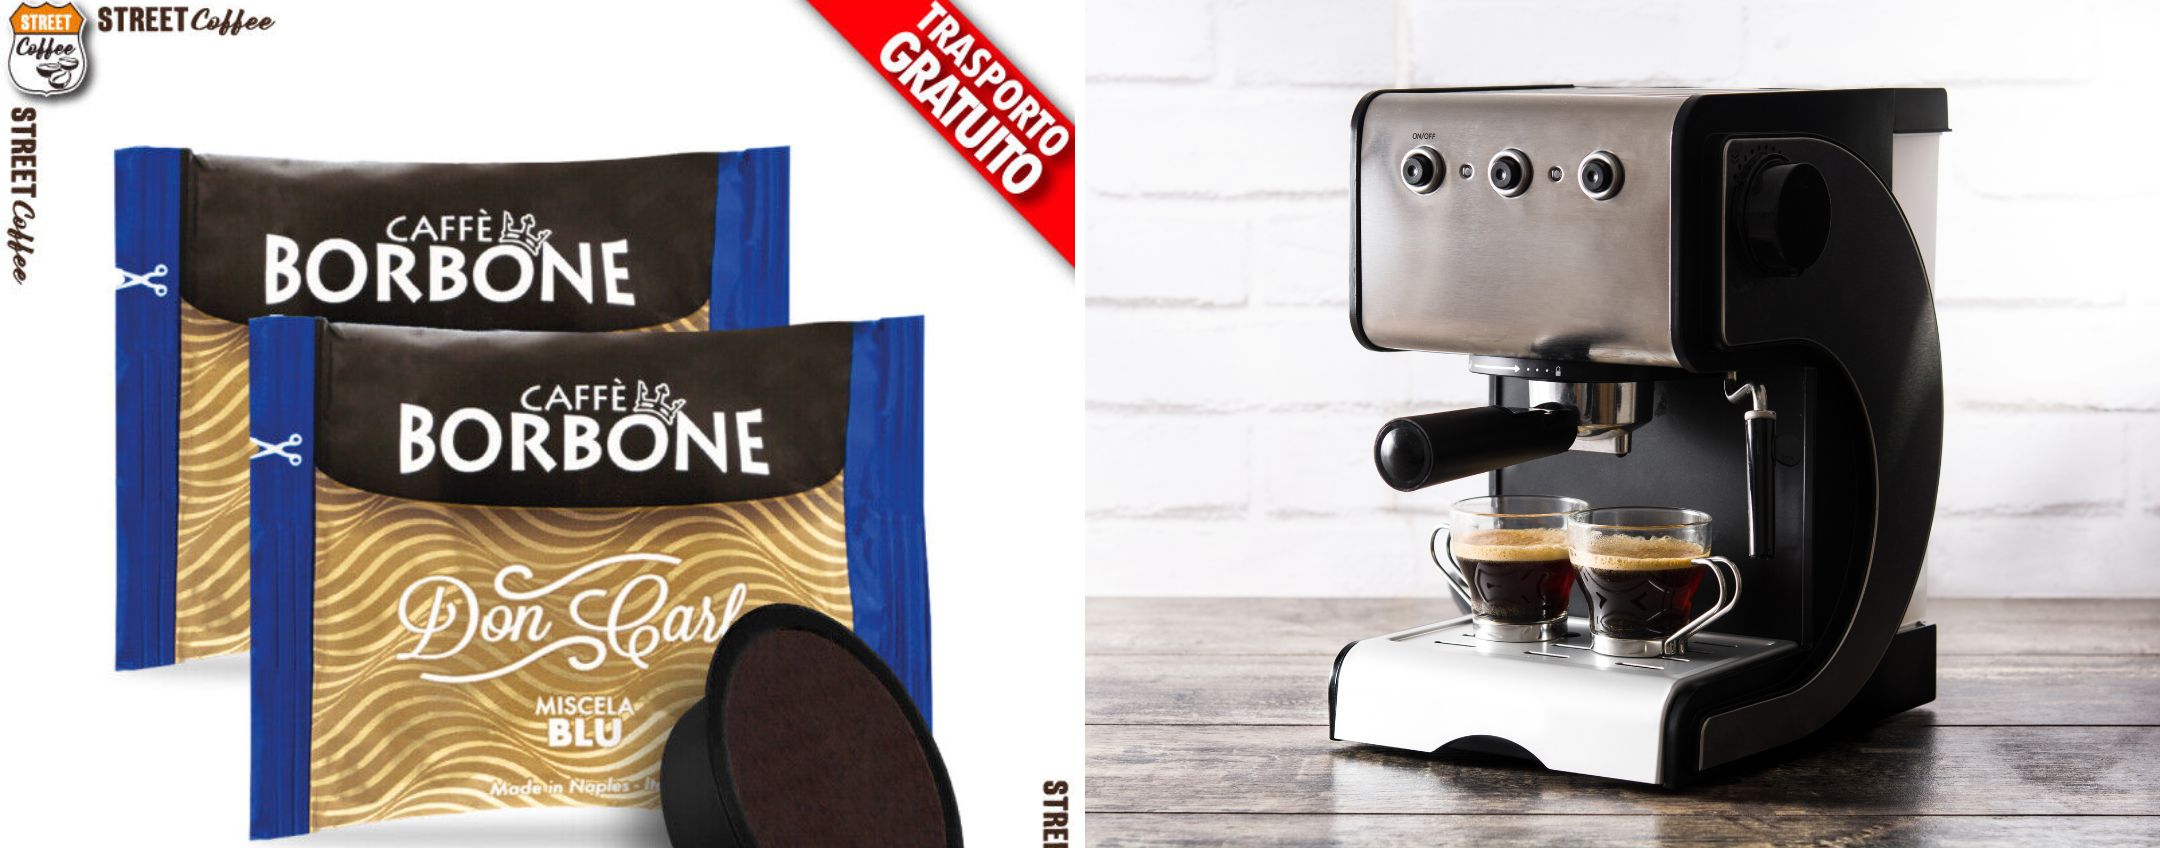 100 capsule di caffè Borbone a SOLI 21,60€: offerta imperdibile! - Melablog